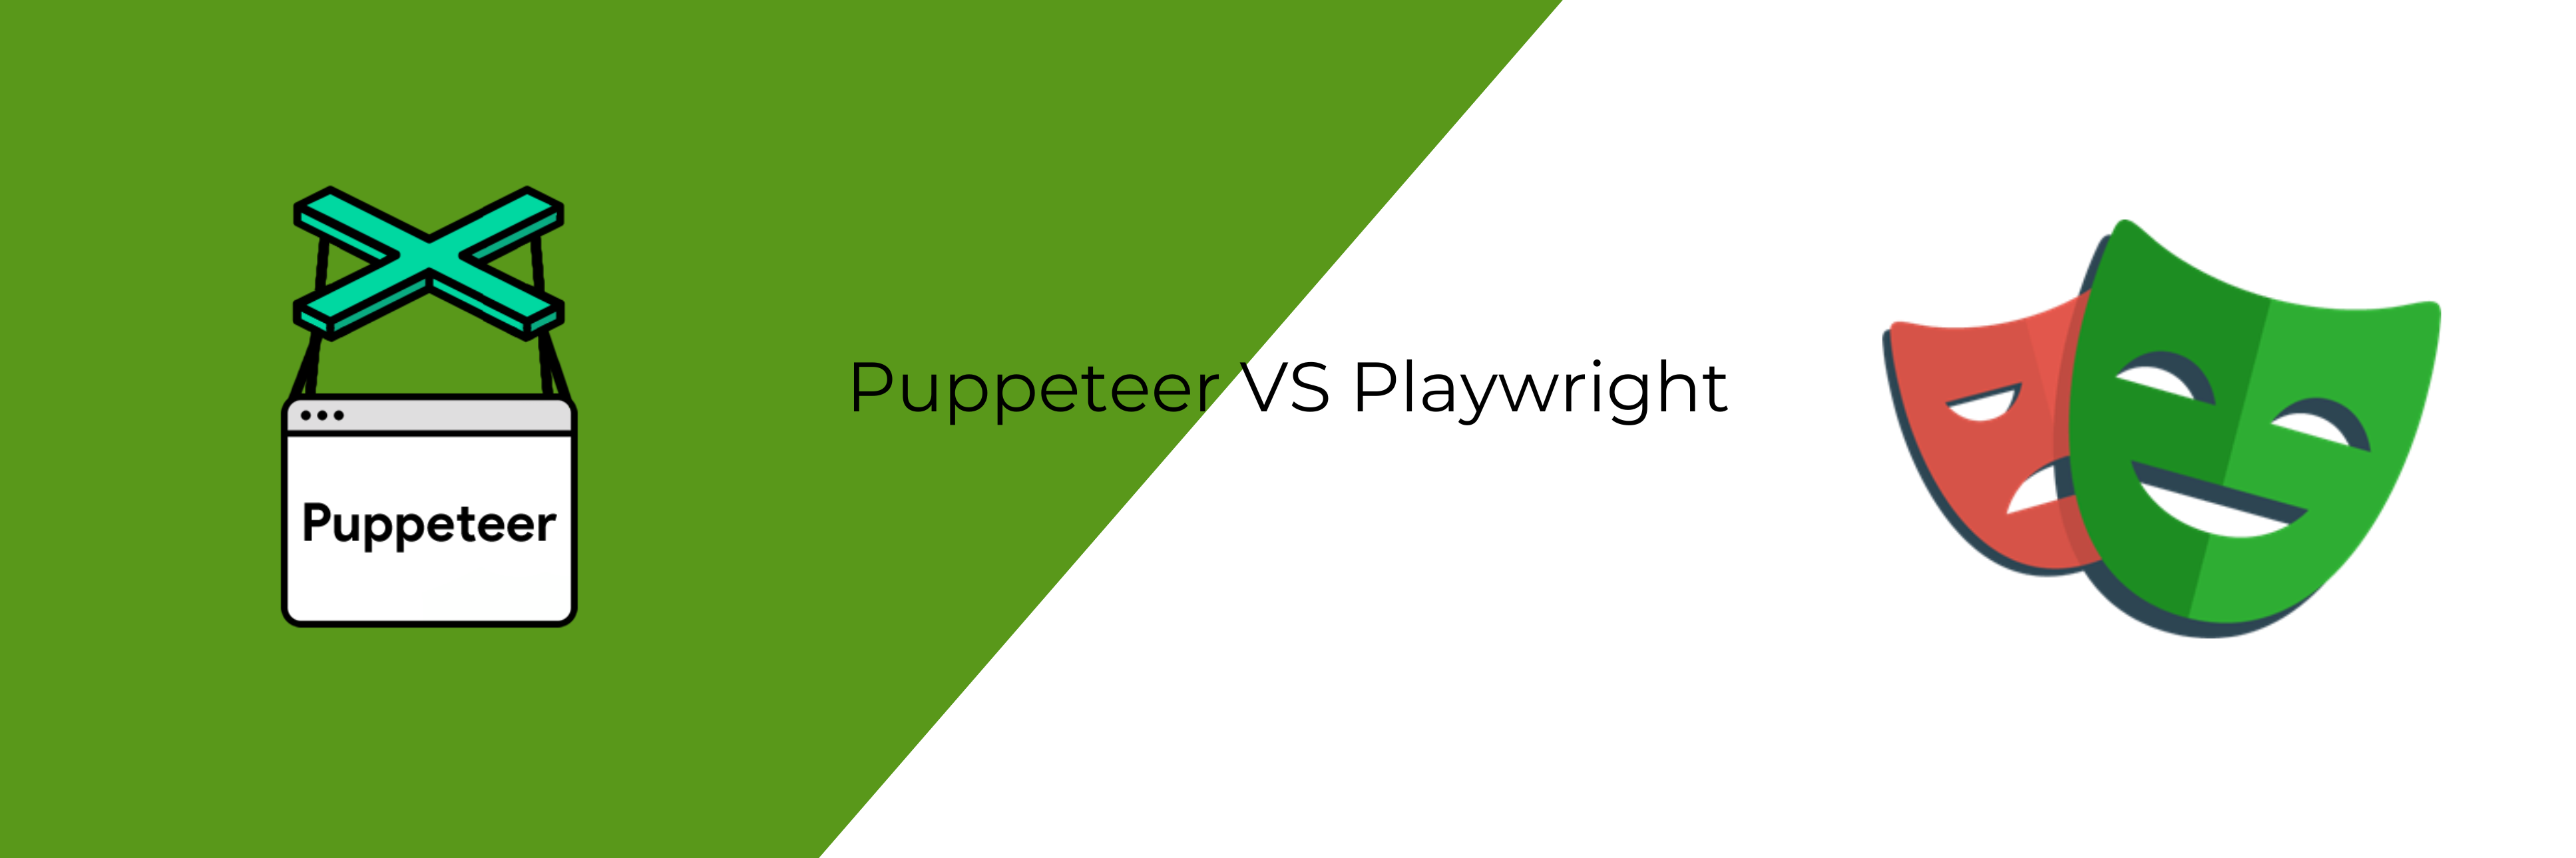 різниця між puppeteer та playwright